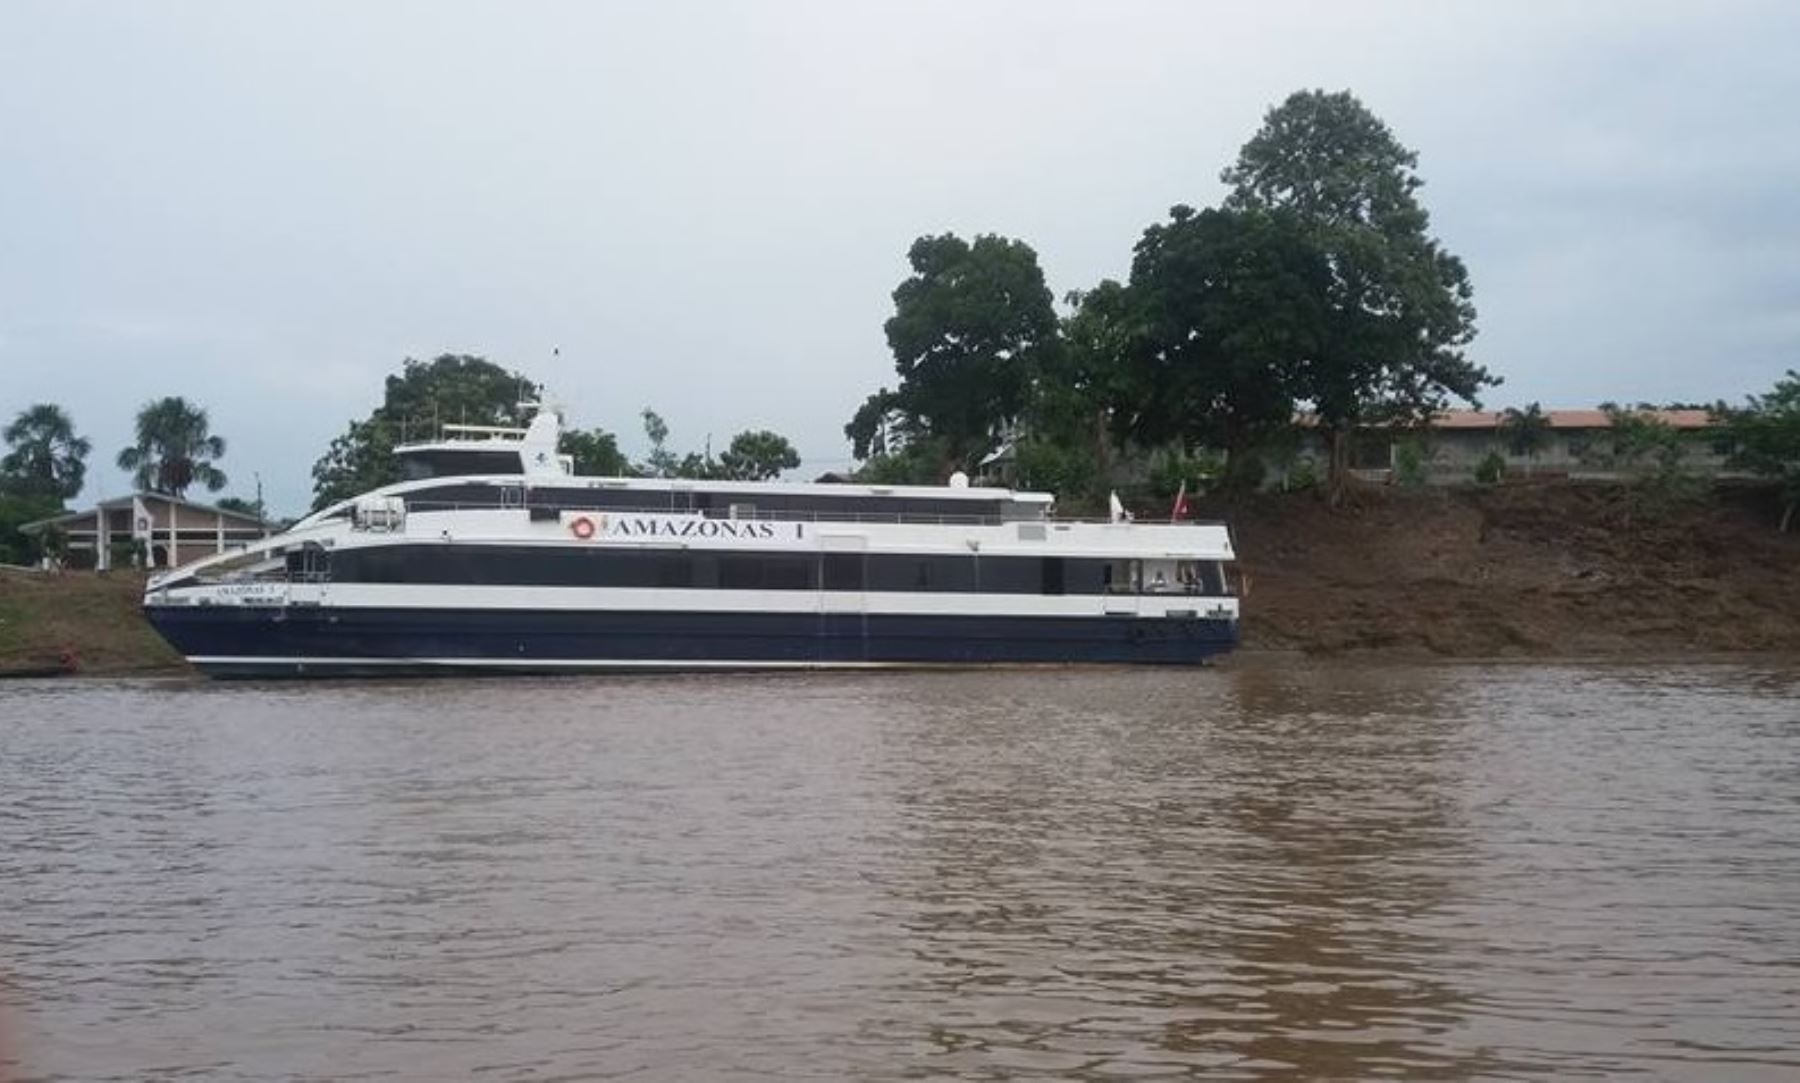 Cada semana el Ferry Amazónico hará 3 viajes de ida y vuelta por el río Amazonas. En esta ruta, se transportarán alrededor de 100,000 pasajeros cada año.